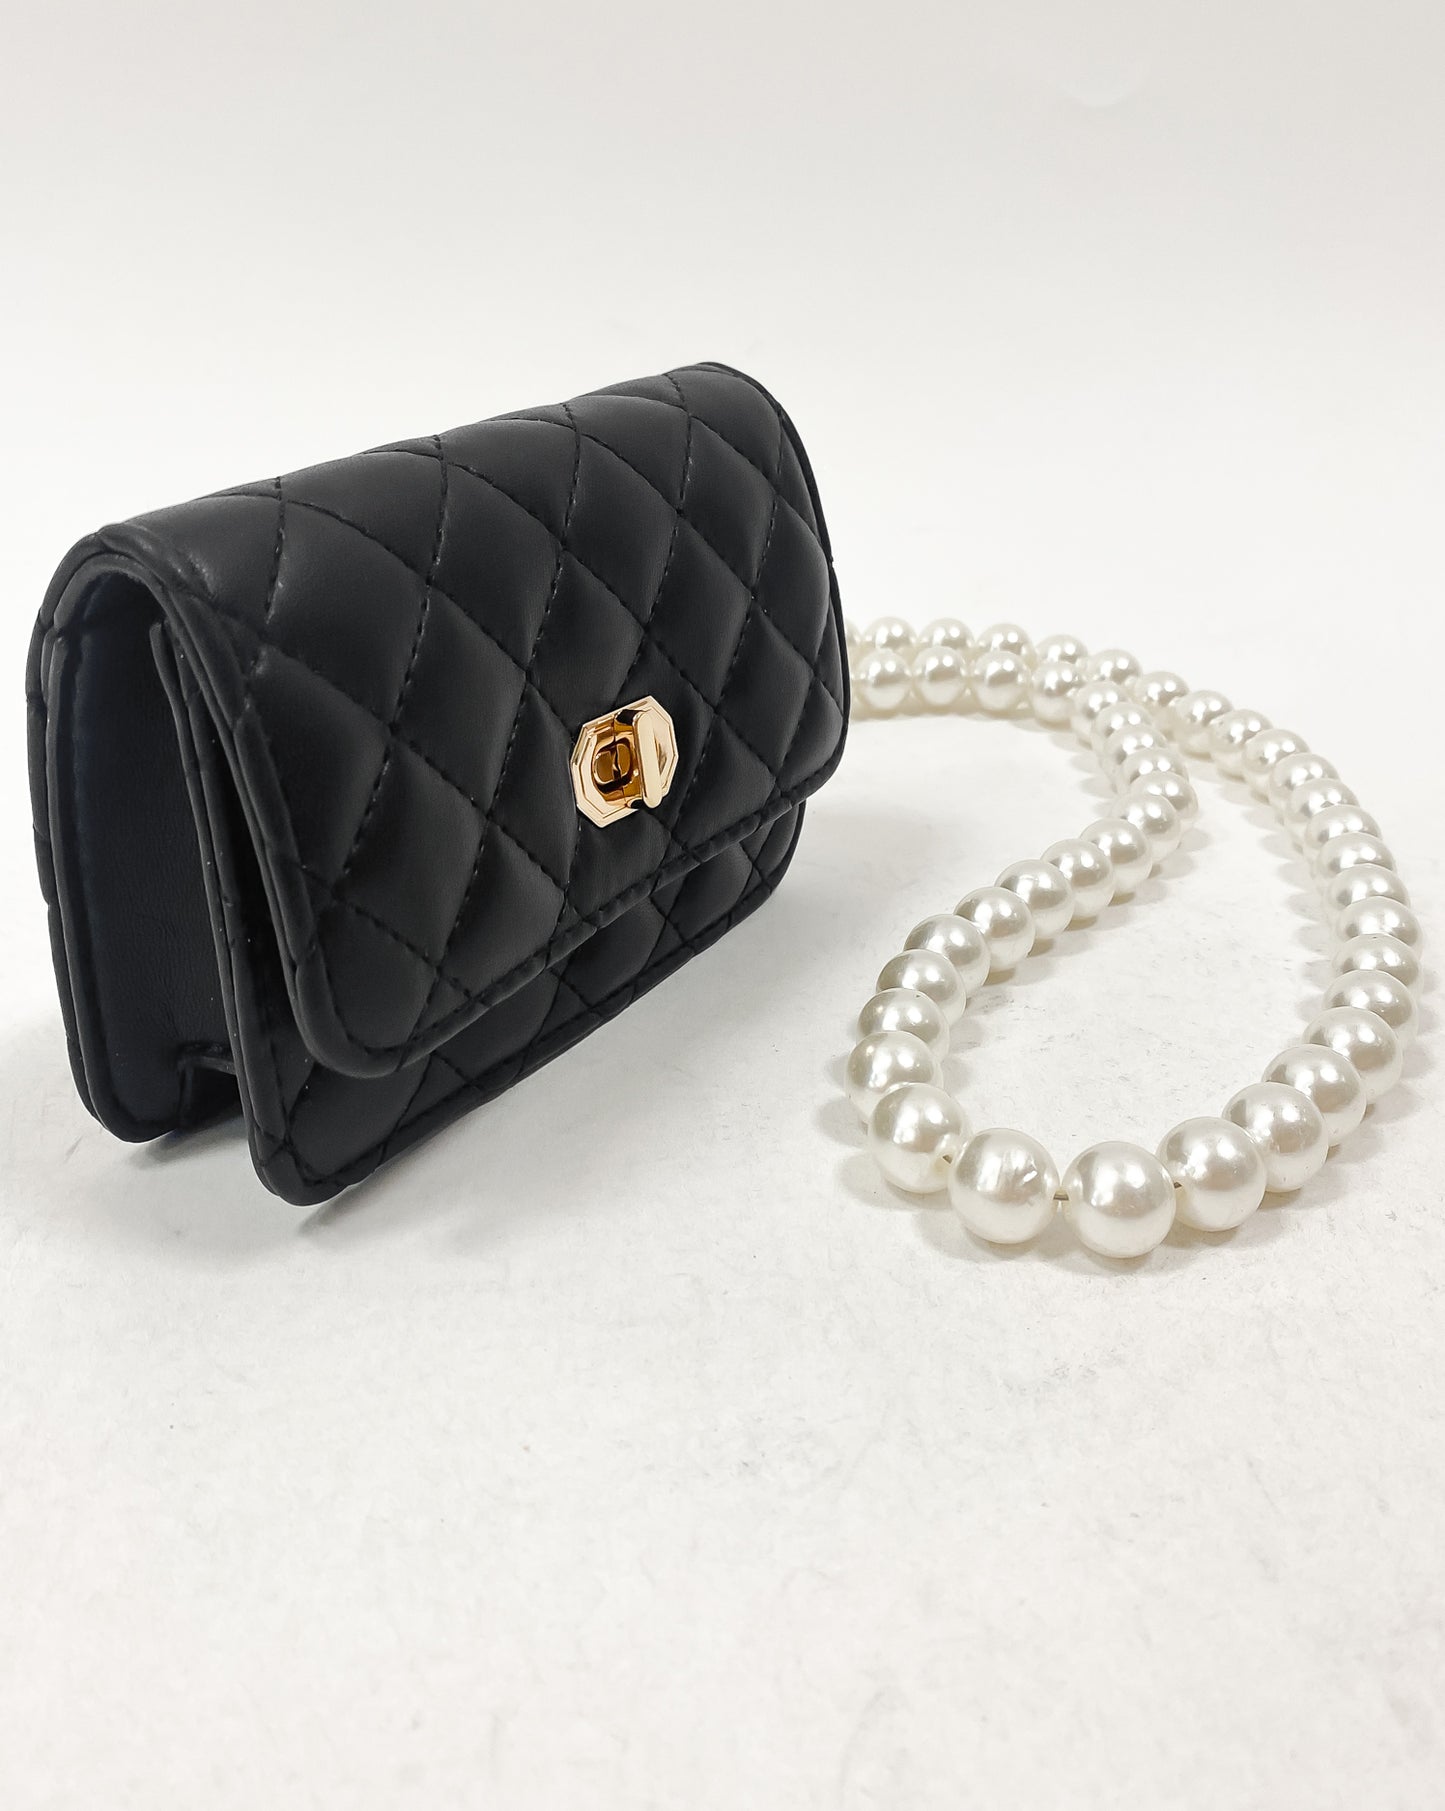 黑色 PU 皮革絎縫珍珠鏈條包 *預購*